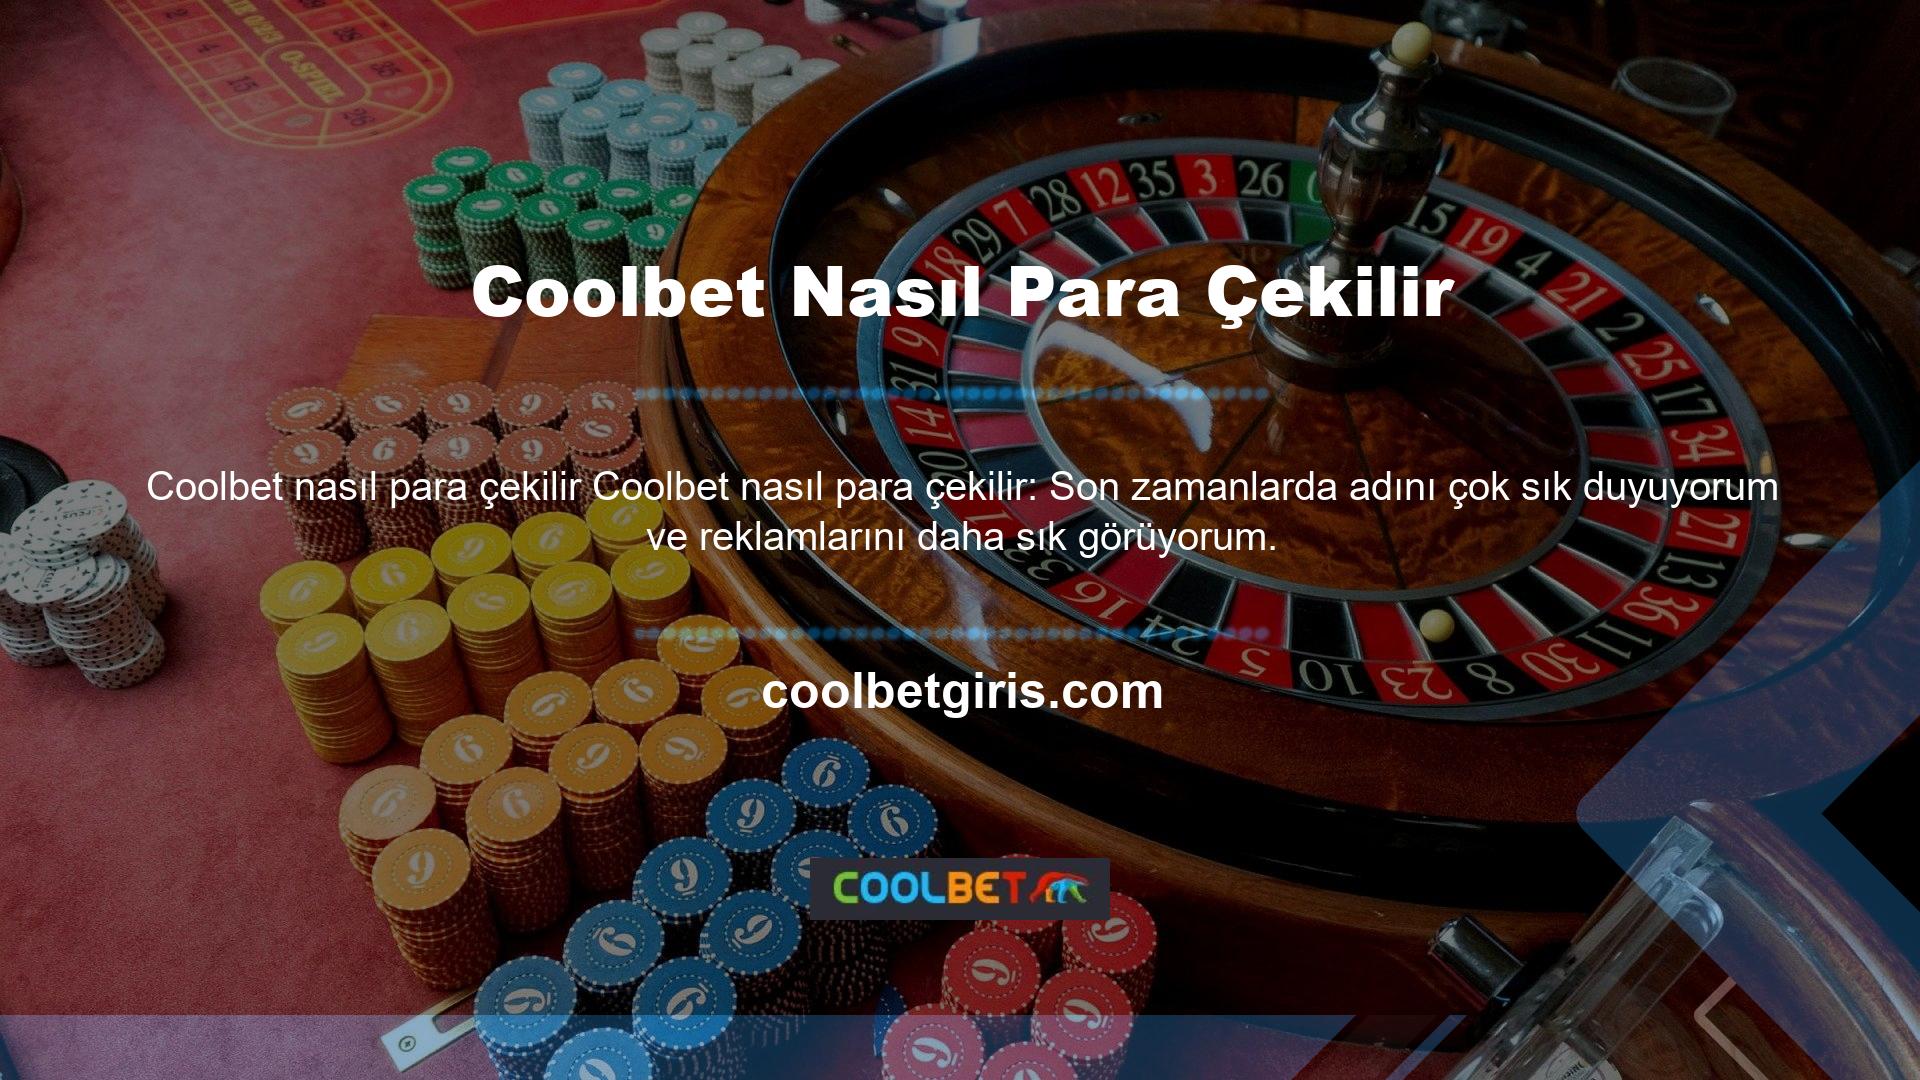 Türkiye pazarına yeni girmiş bir site olan Coolbet hakkında bilgi vermek istiyoruz